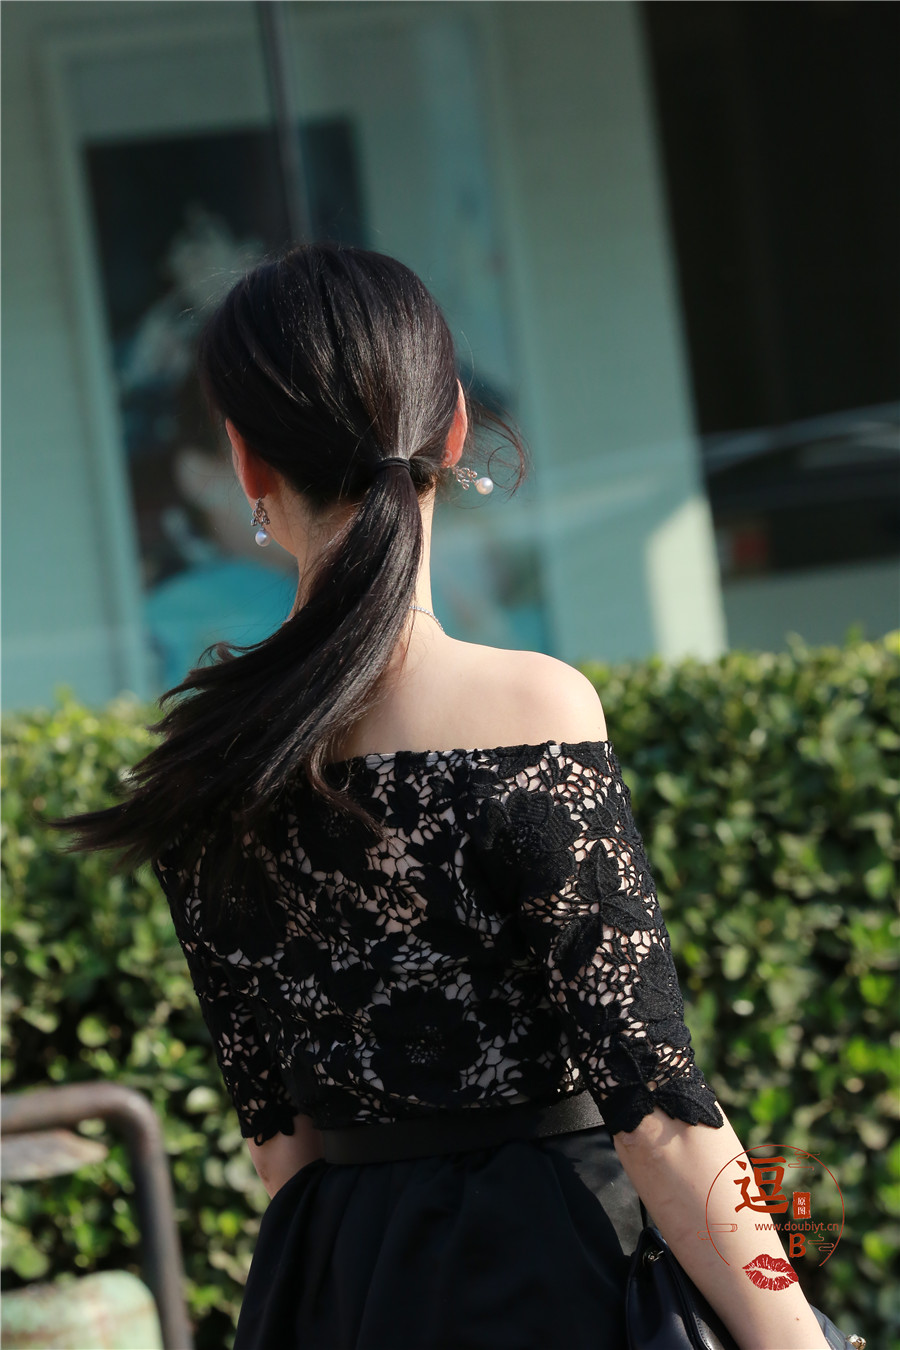 编码0126黑色长裙黑丝高跟香肩气质 25782578 小香肩,高跟,黑丝,长裙,气质, 帖子ID:2499